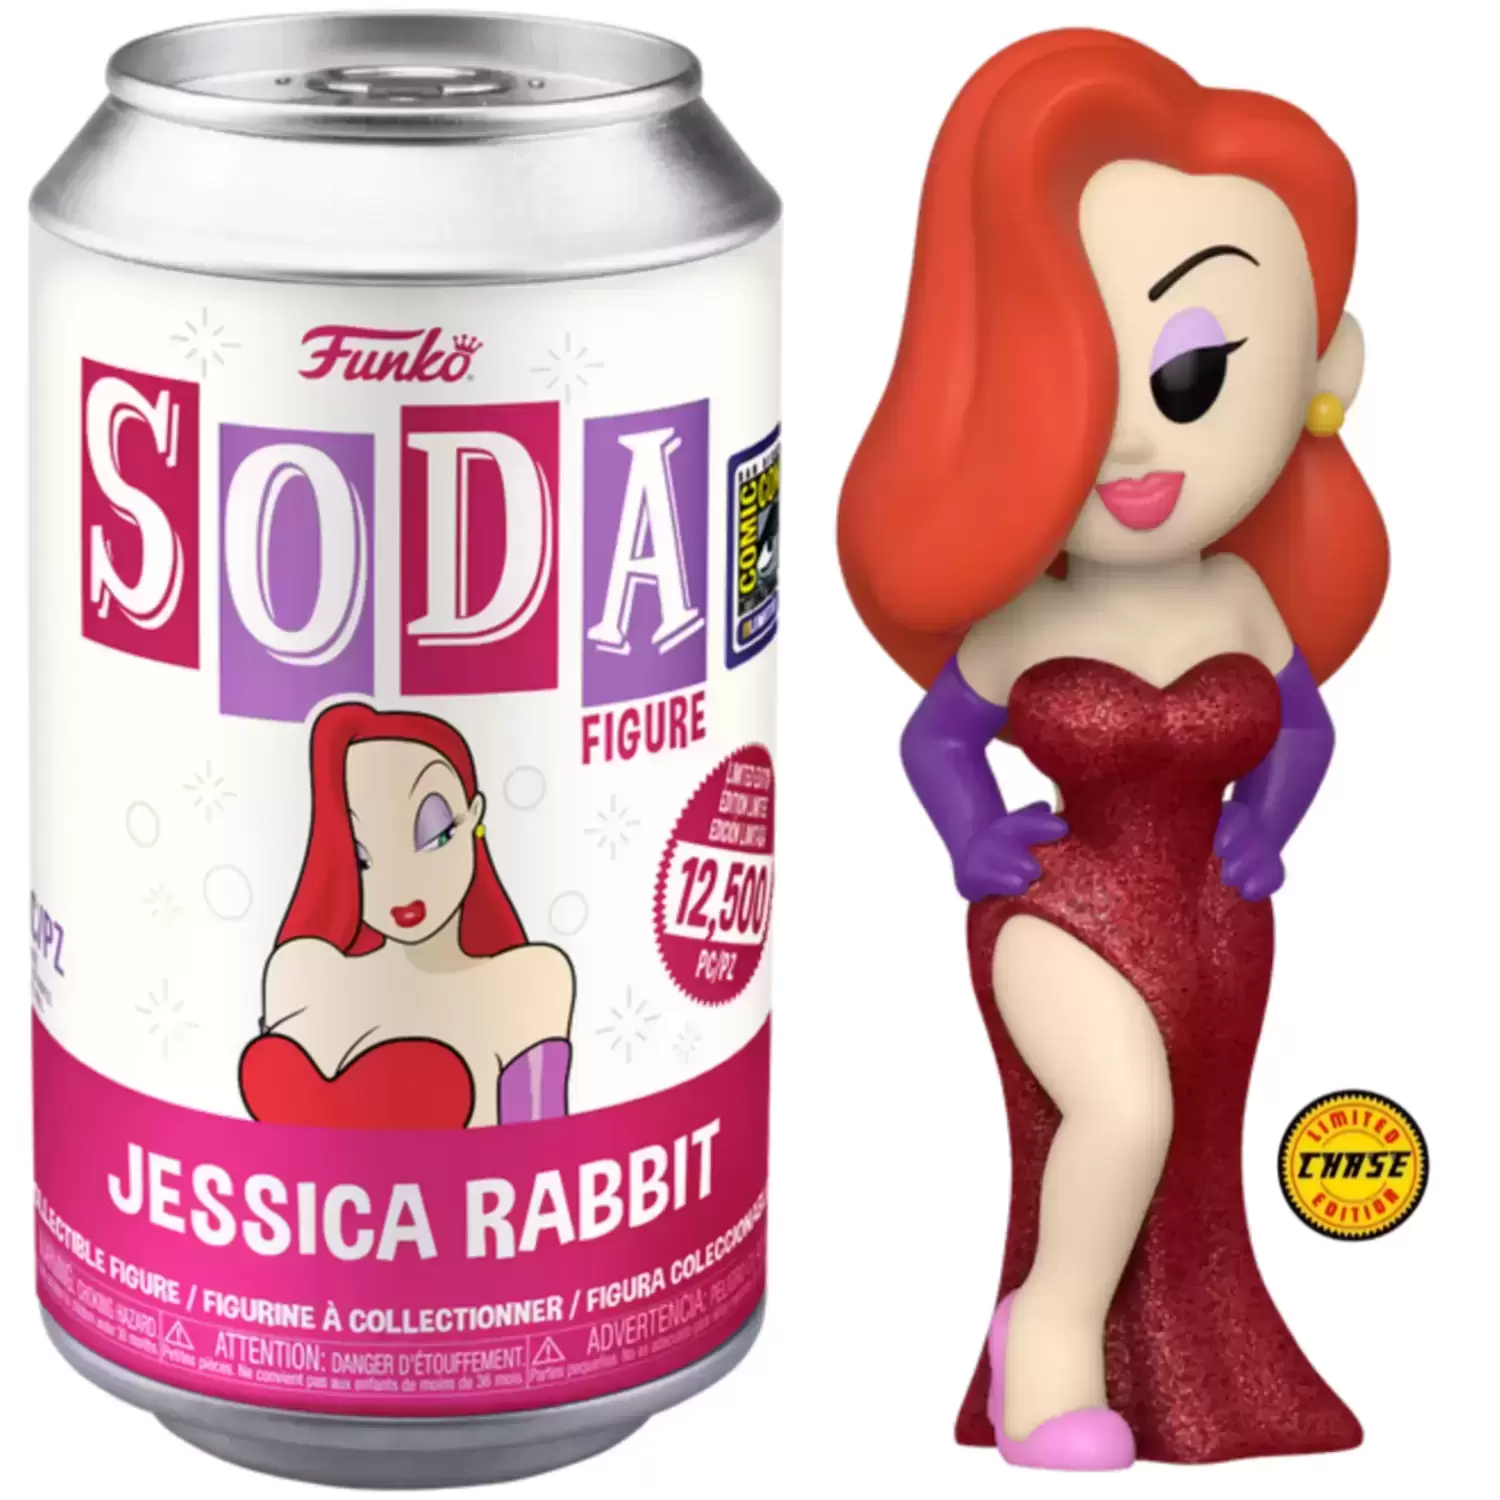 Vinyl Soda! - Roger Rabbit - Jessica Rabbit Chase